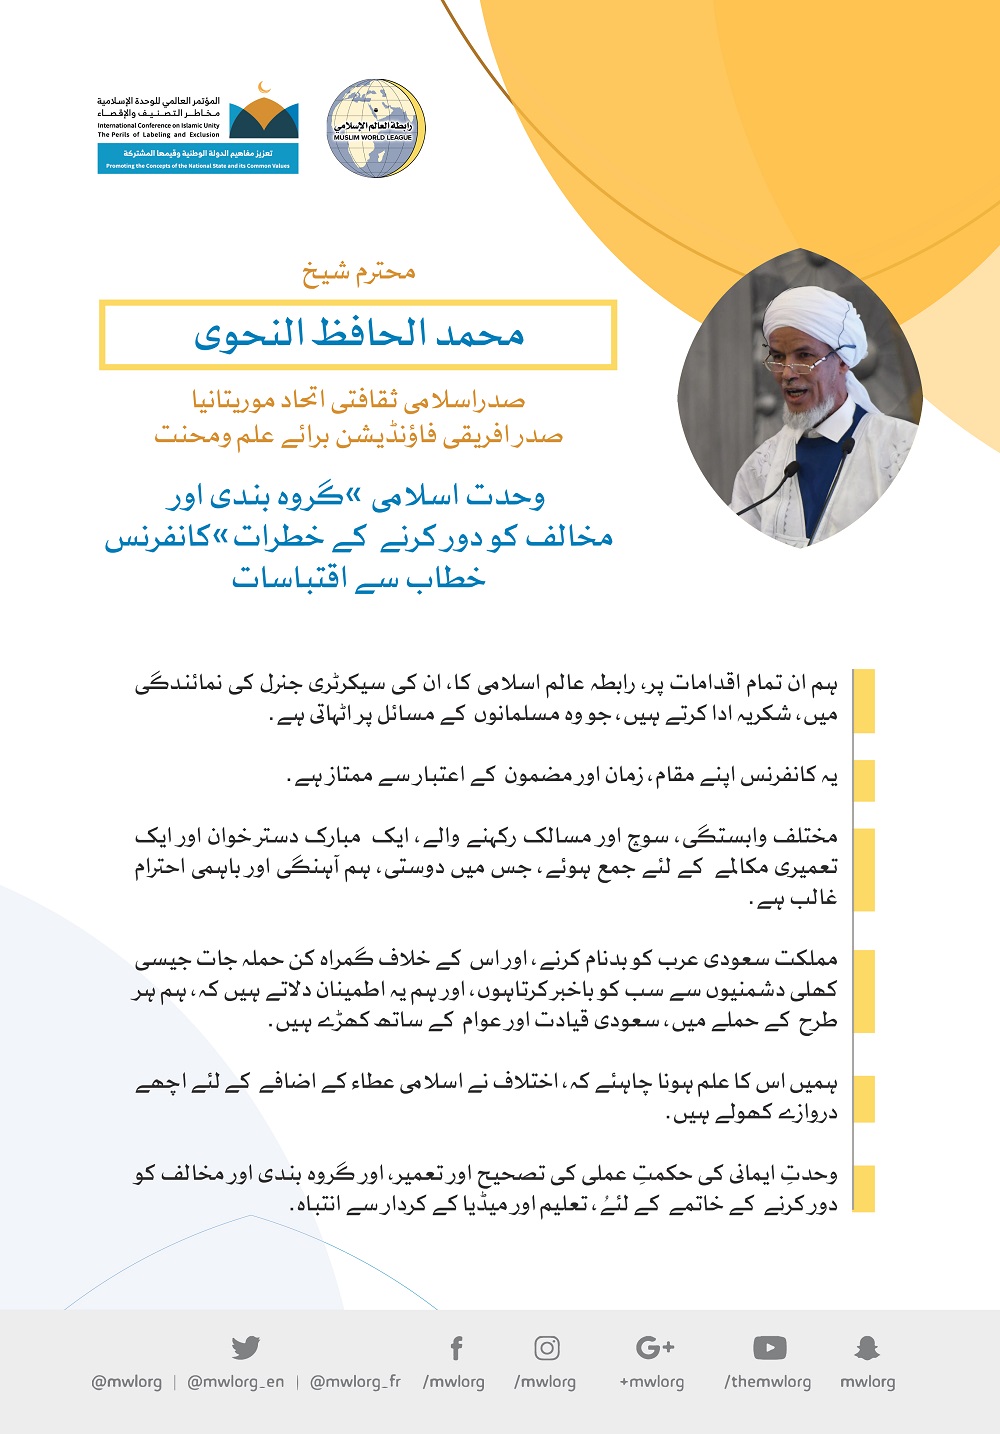 رابطہ عالم اسلامی کی کانفرنس سے محترم شیخ محمد الحافظ النحوی